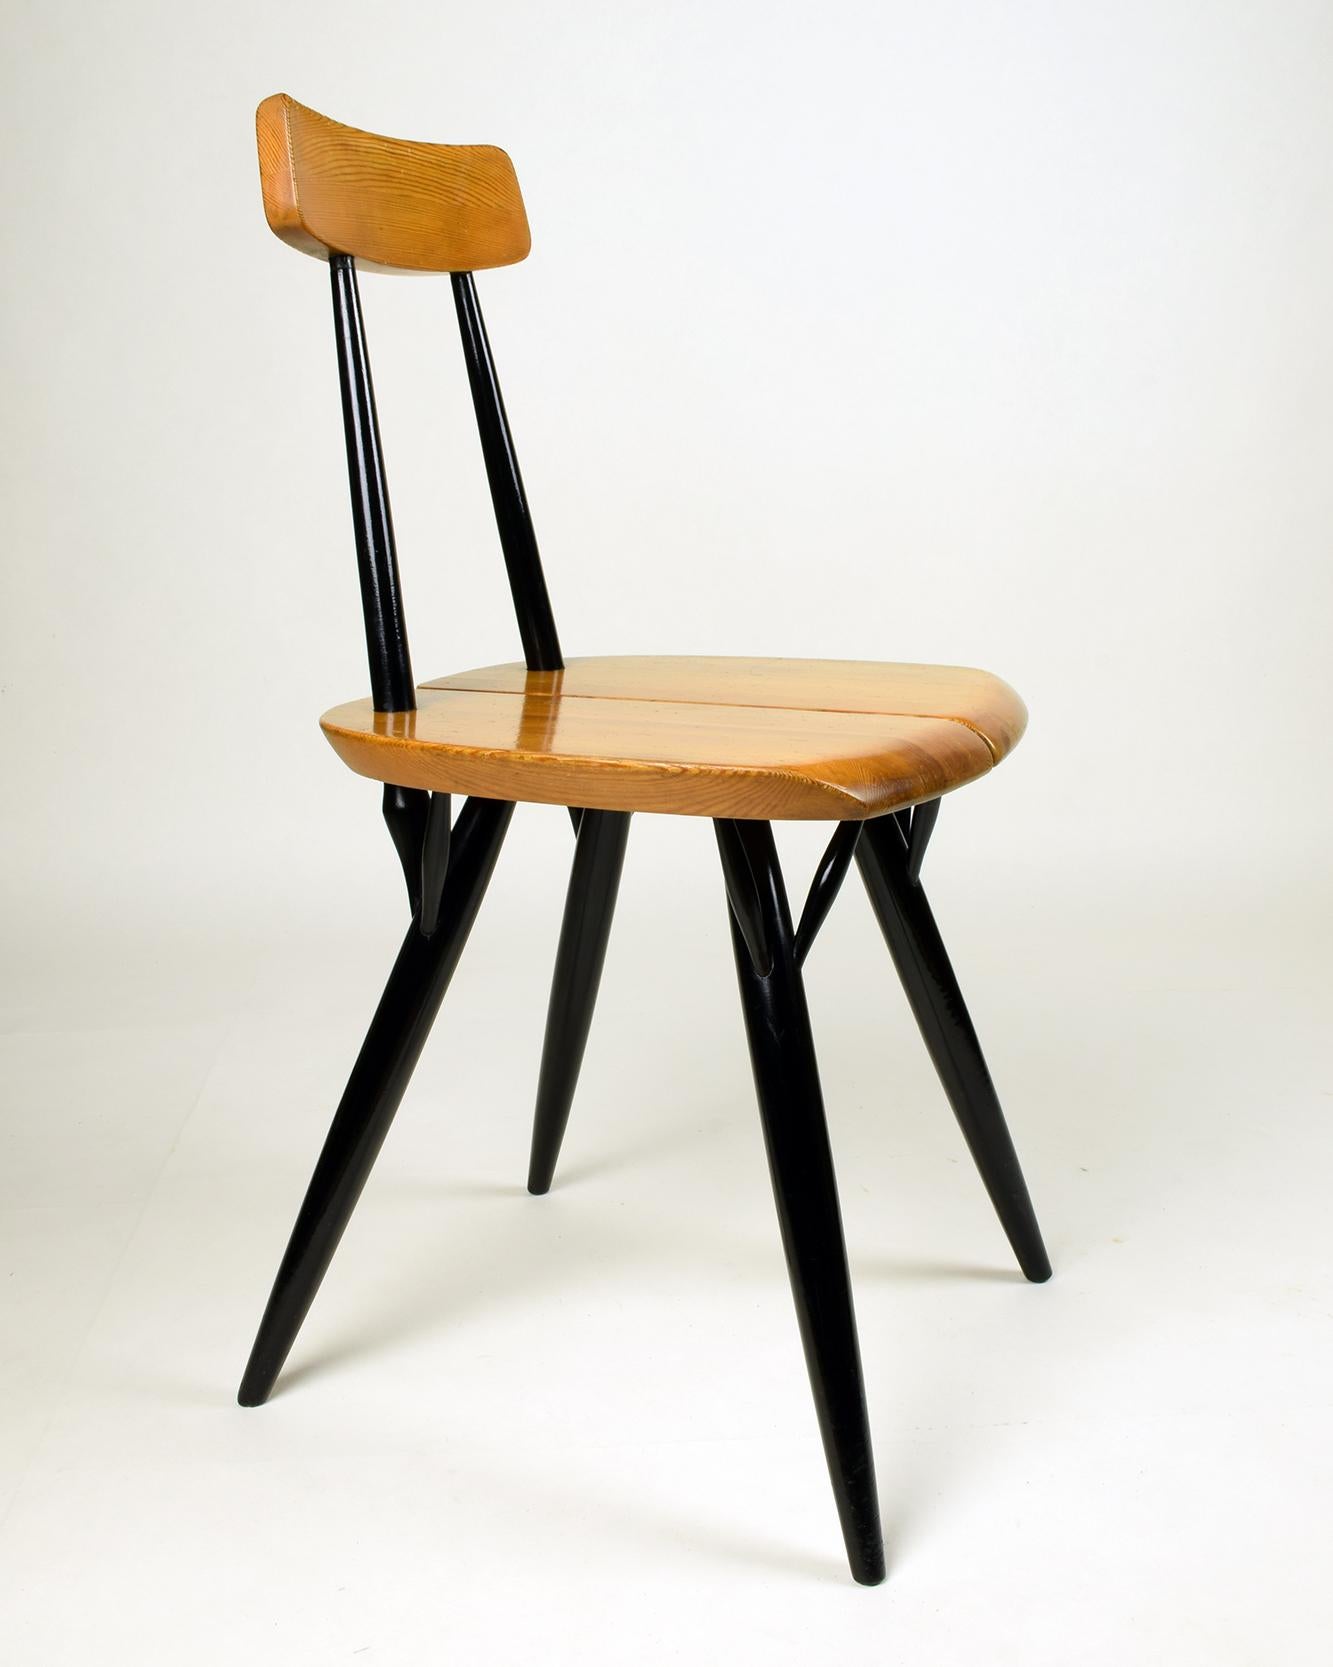 Finnish Ilmari Tapiovaara, ‘Pirkka’ Side Chair, 1955, Lovely Original Early Version